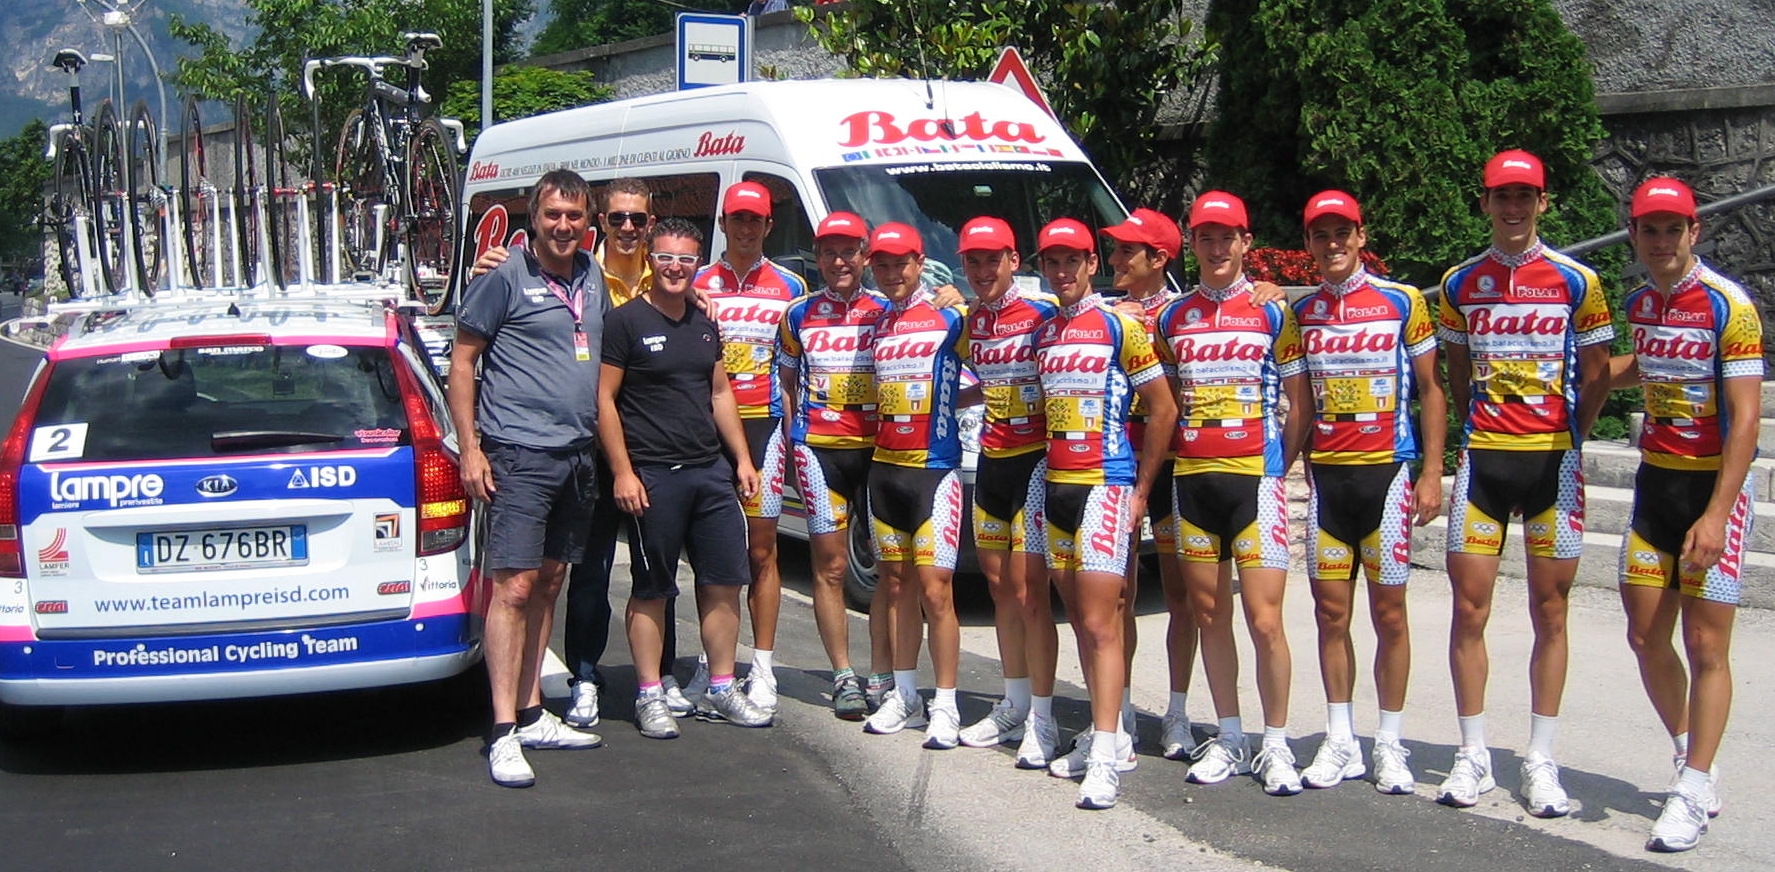 Giro d'Italia 2011, in Valsugana l'incontro con la Bata